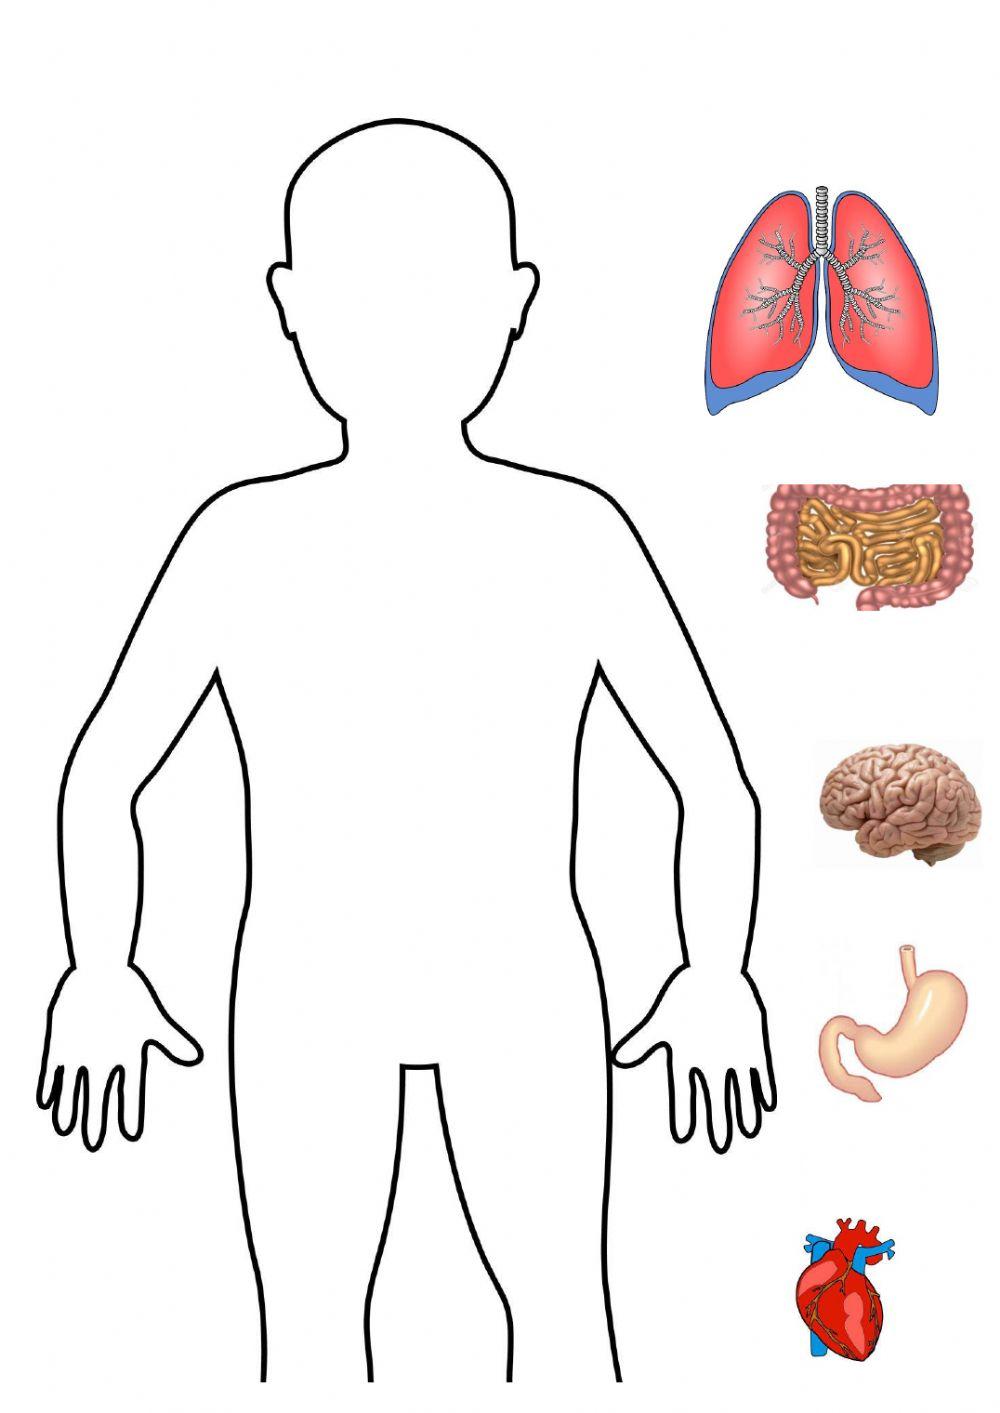 El cuerpo humano-órganos